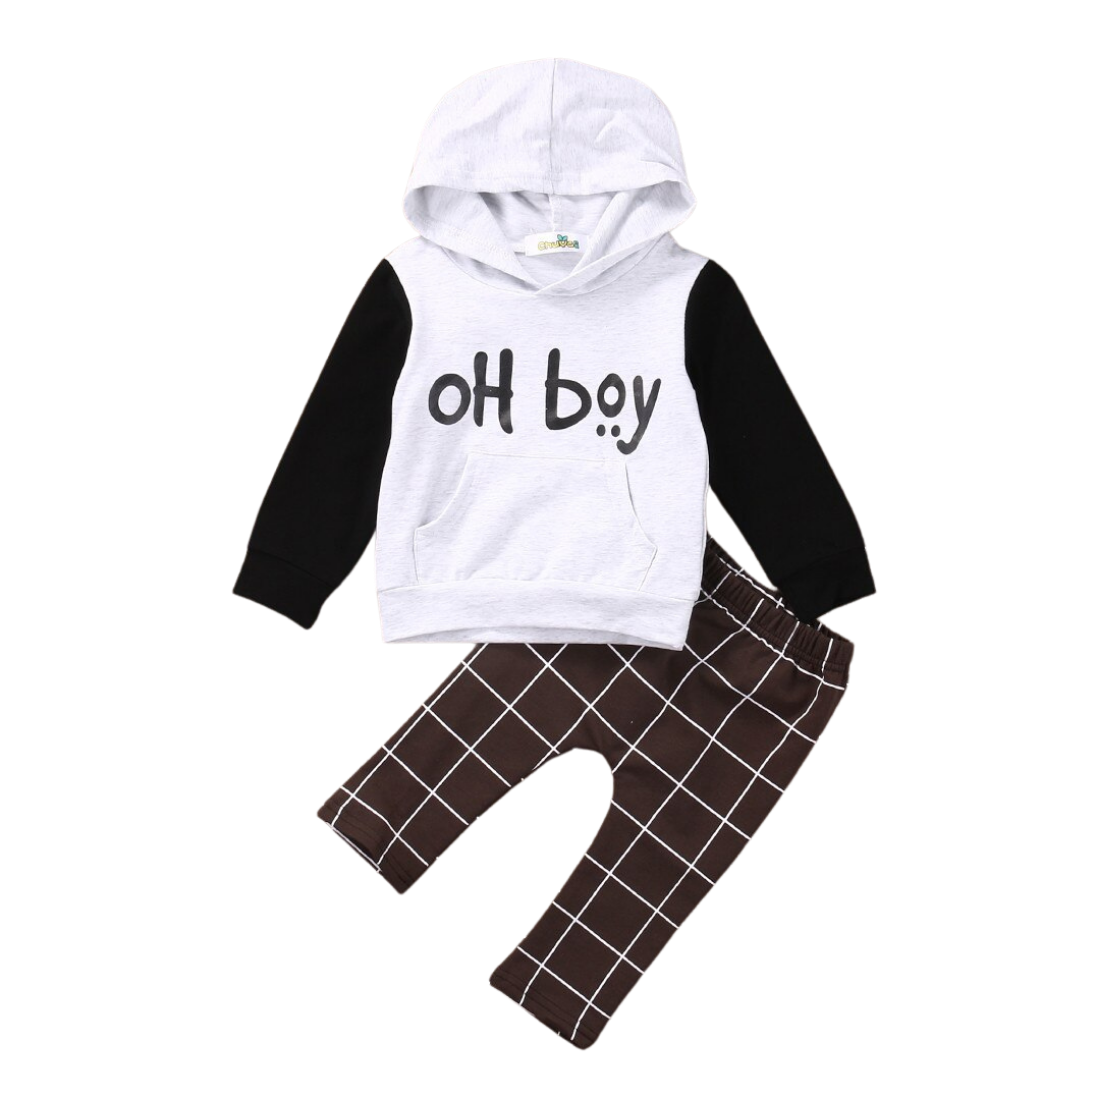 Oh Boy Baby Clothing Set